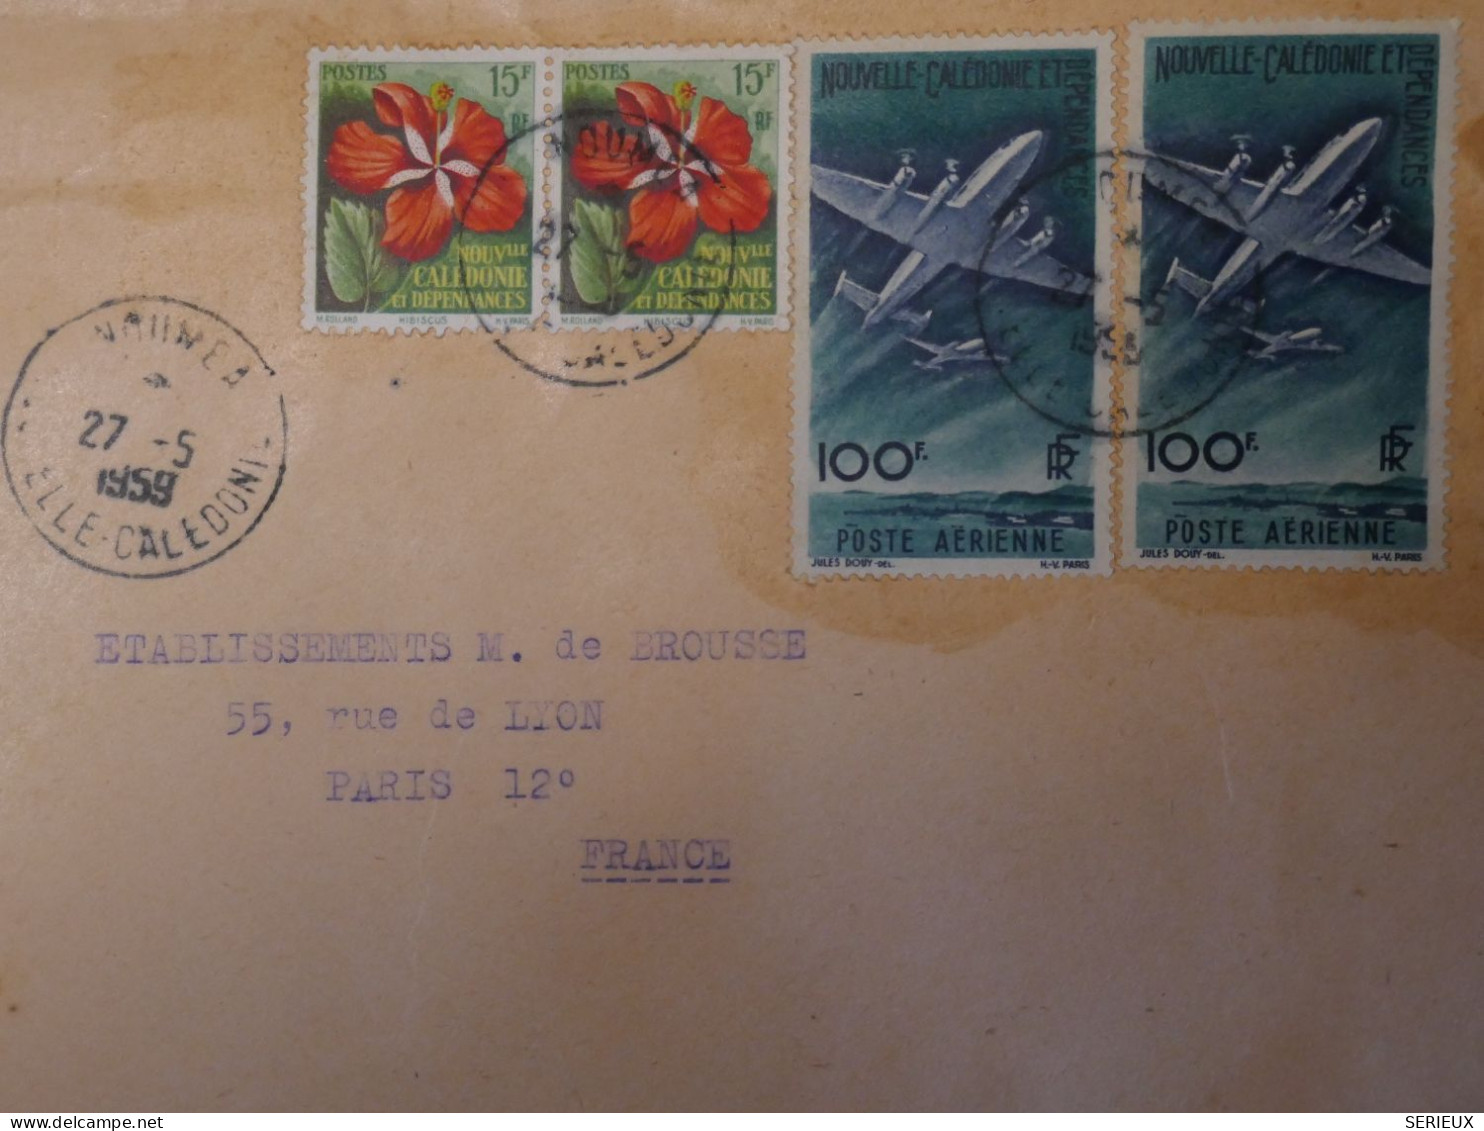 BS19 NOUVELLE CALEDONIE  BELLE LETTRE RR 1958 PAR AVION NOUMEA  A PARIS FRANCE +  P. AERIENNE + AFFR. INTERESSANT+ - Covers & Documents